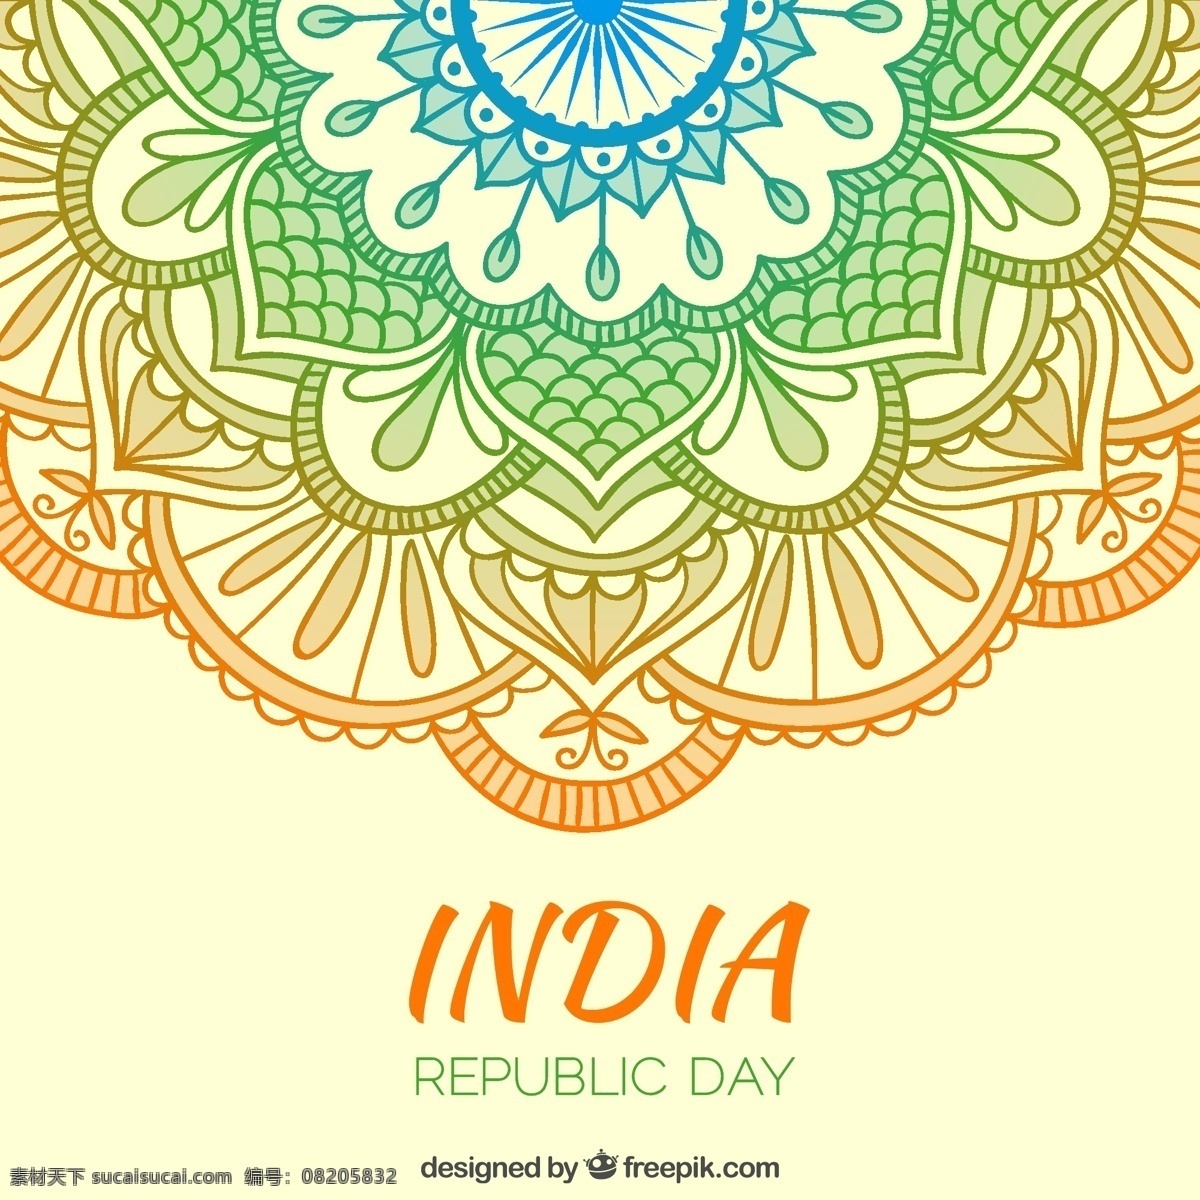 印度 共和 日 背景 装饰品 节日 假日 颜色 标志 色彩艳丽 装饰 抽纱